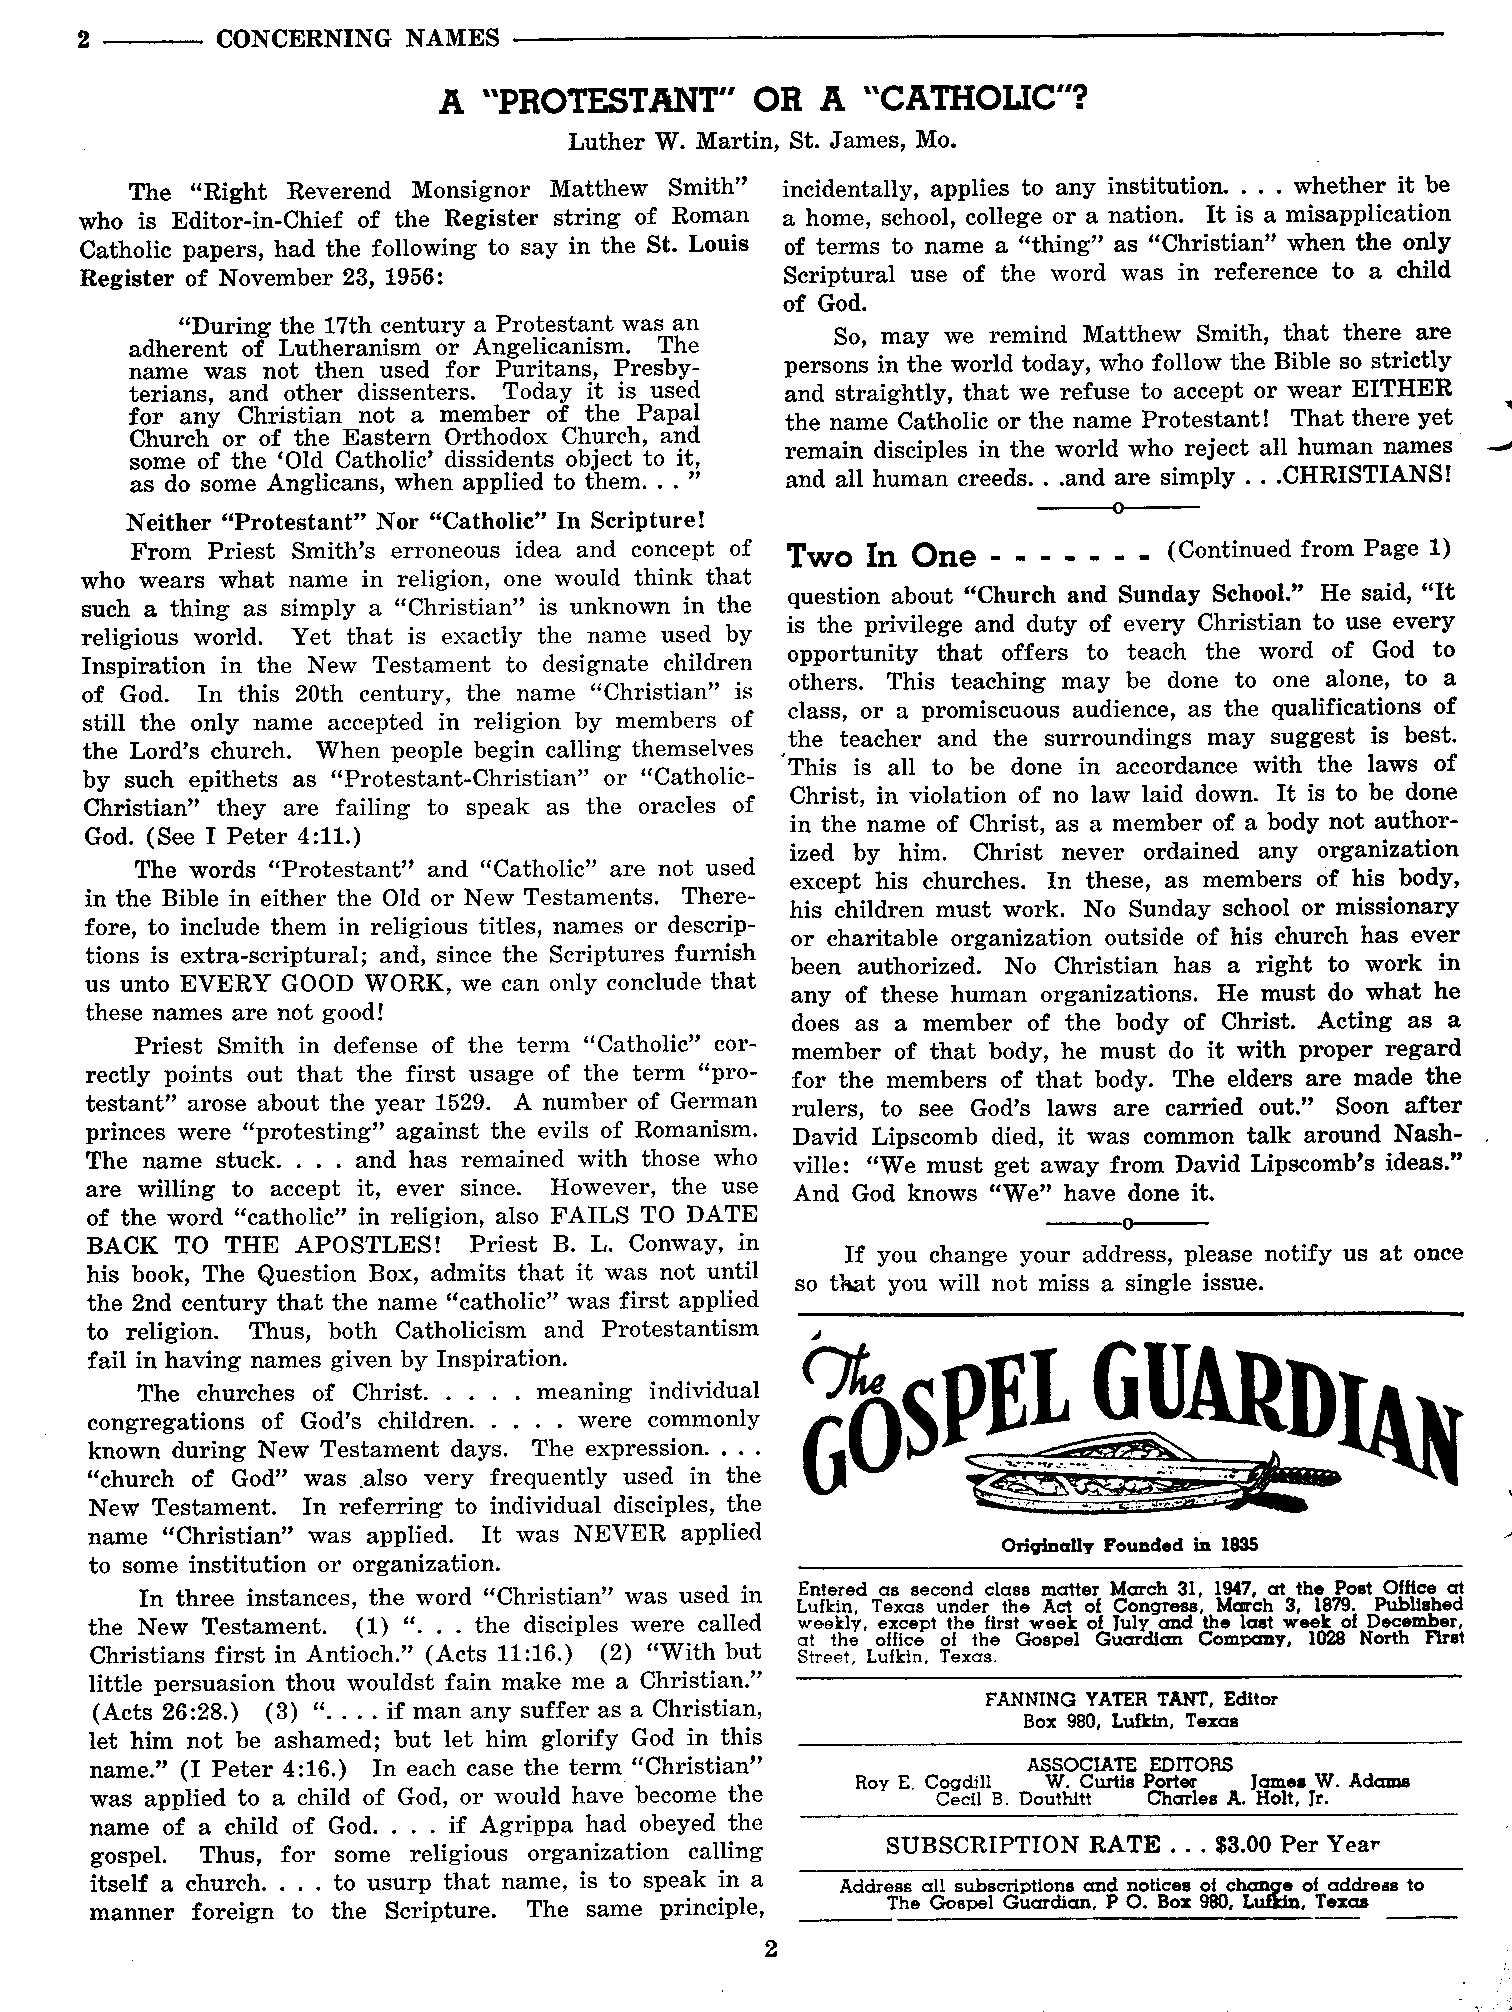 Gospel Guardian Original: Vol.9 No.1 Pg.2